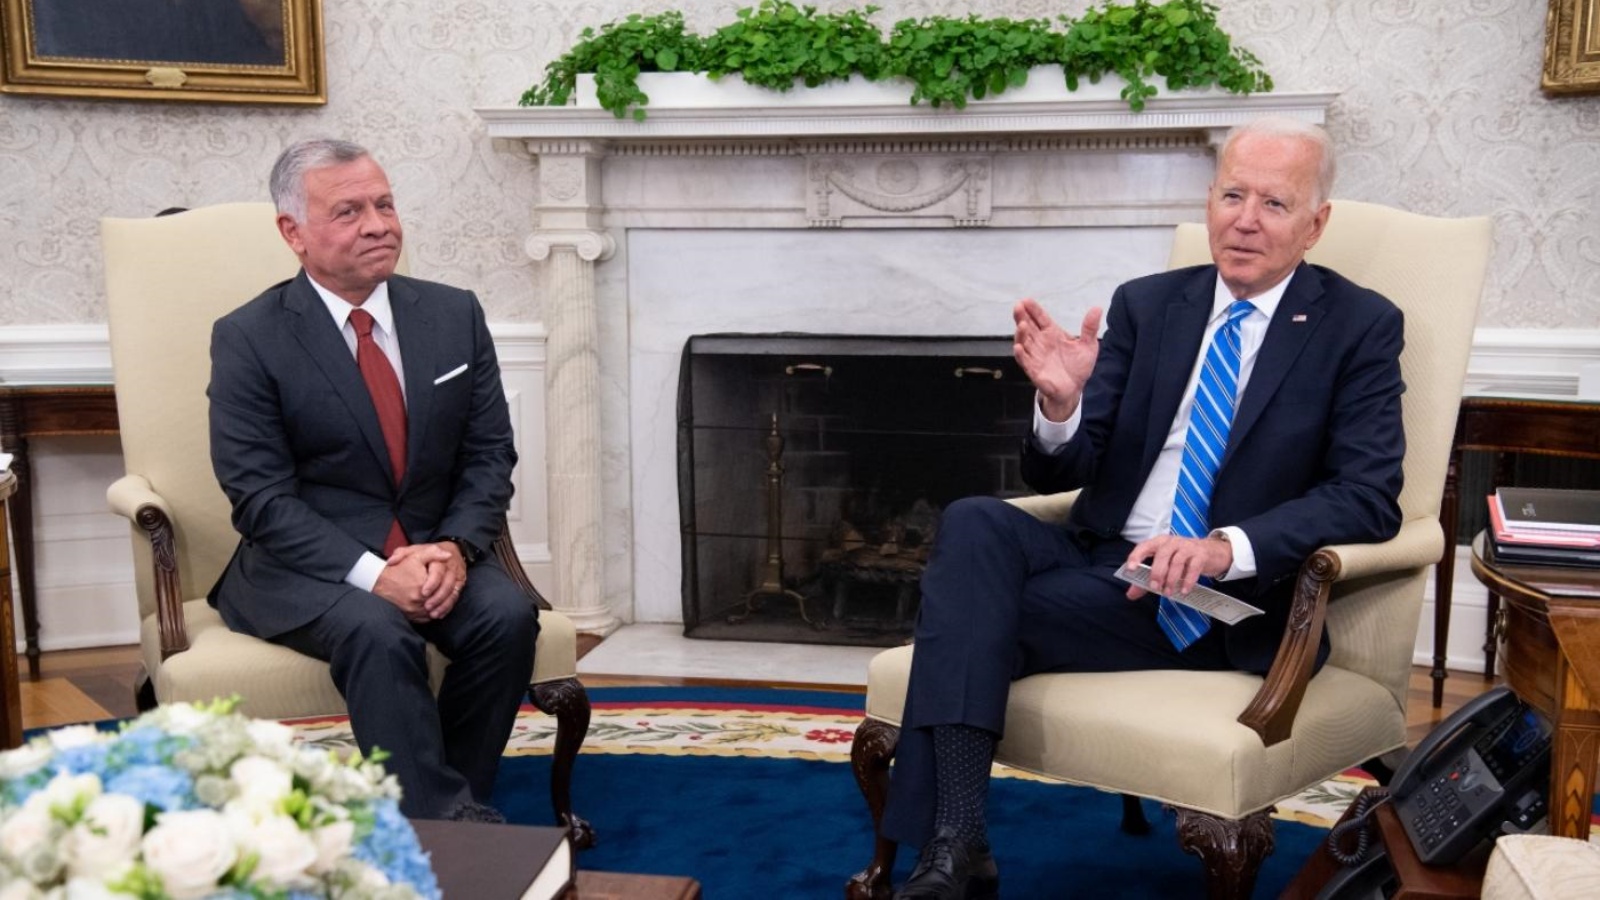 الرئيس الأميركي جو بايدن (إلى اليمين) والملك الأردني عبد الله الثاني يعقدان اجتماعًا في المكتب البيضاوي للبيت الأبيض في واشنطن العاصمة، في 19 يوليو 2021